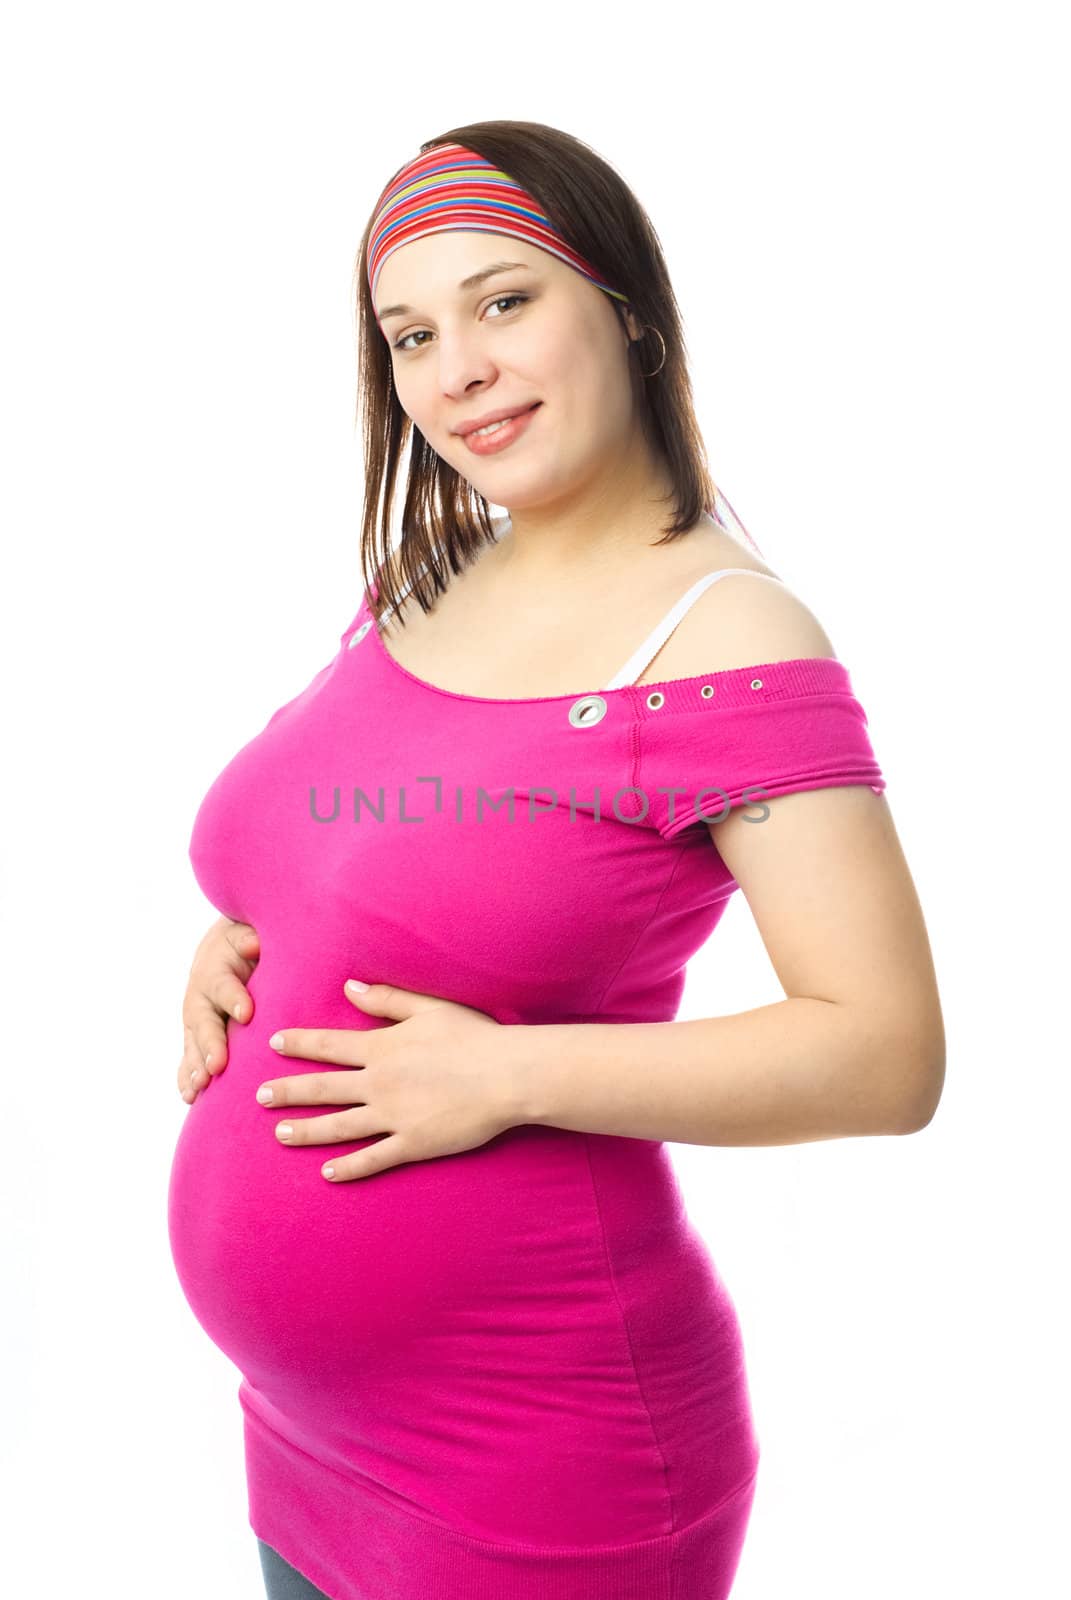 happy pregnant woman by lanak